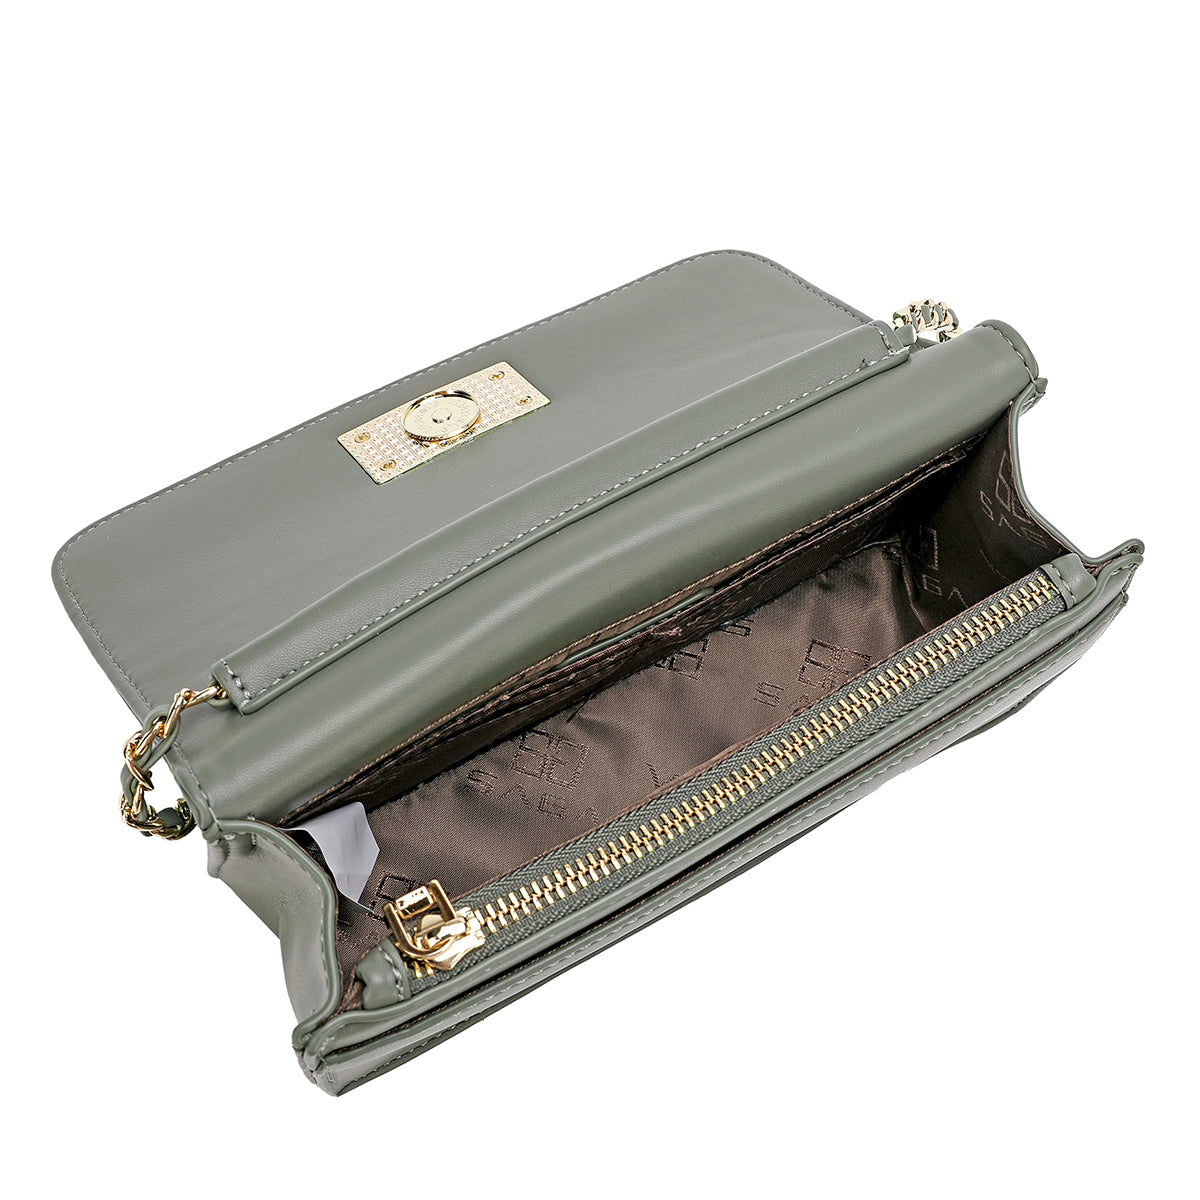 حقيبة كروس مع مشبك أمامي وحزام بتصميم سلسلة عرض 20.5سم لون أسود أو أخضر تفاحي